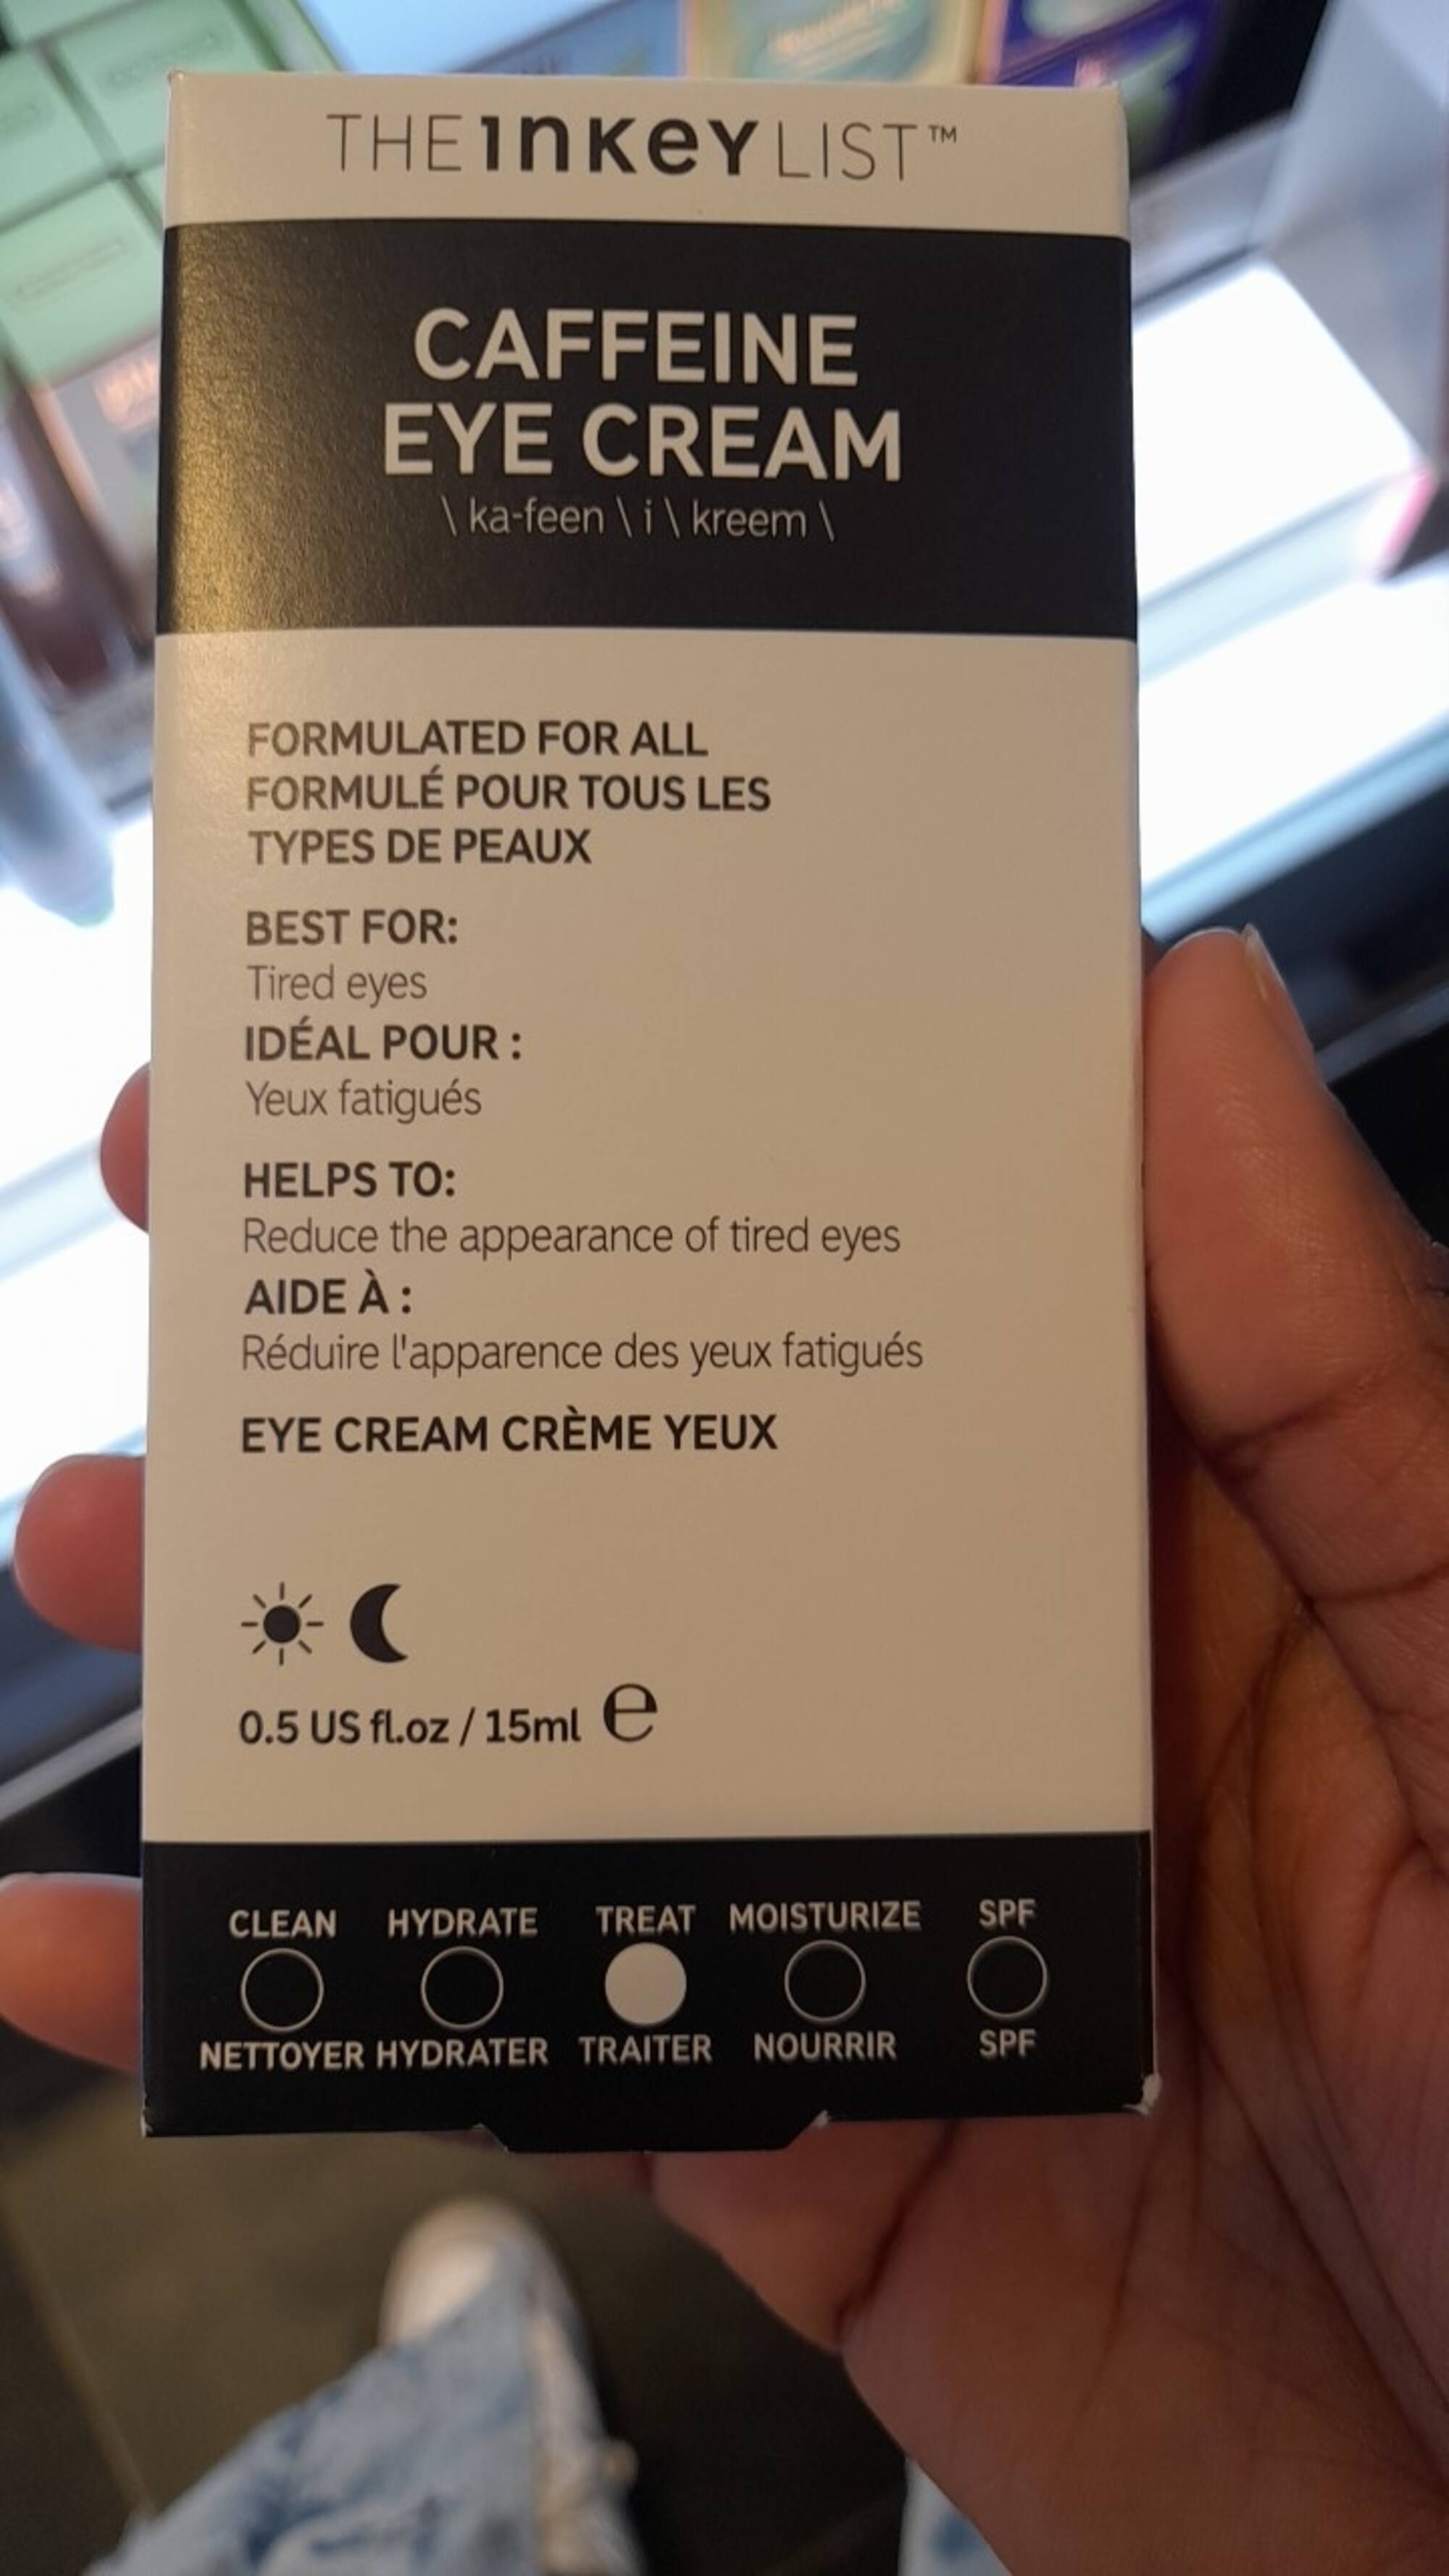 THE INKEY LIST - Caffeine crème yeux